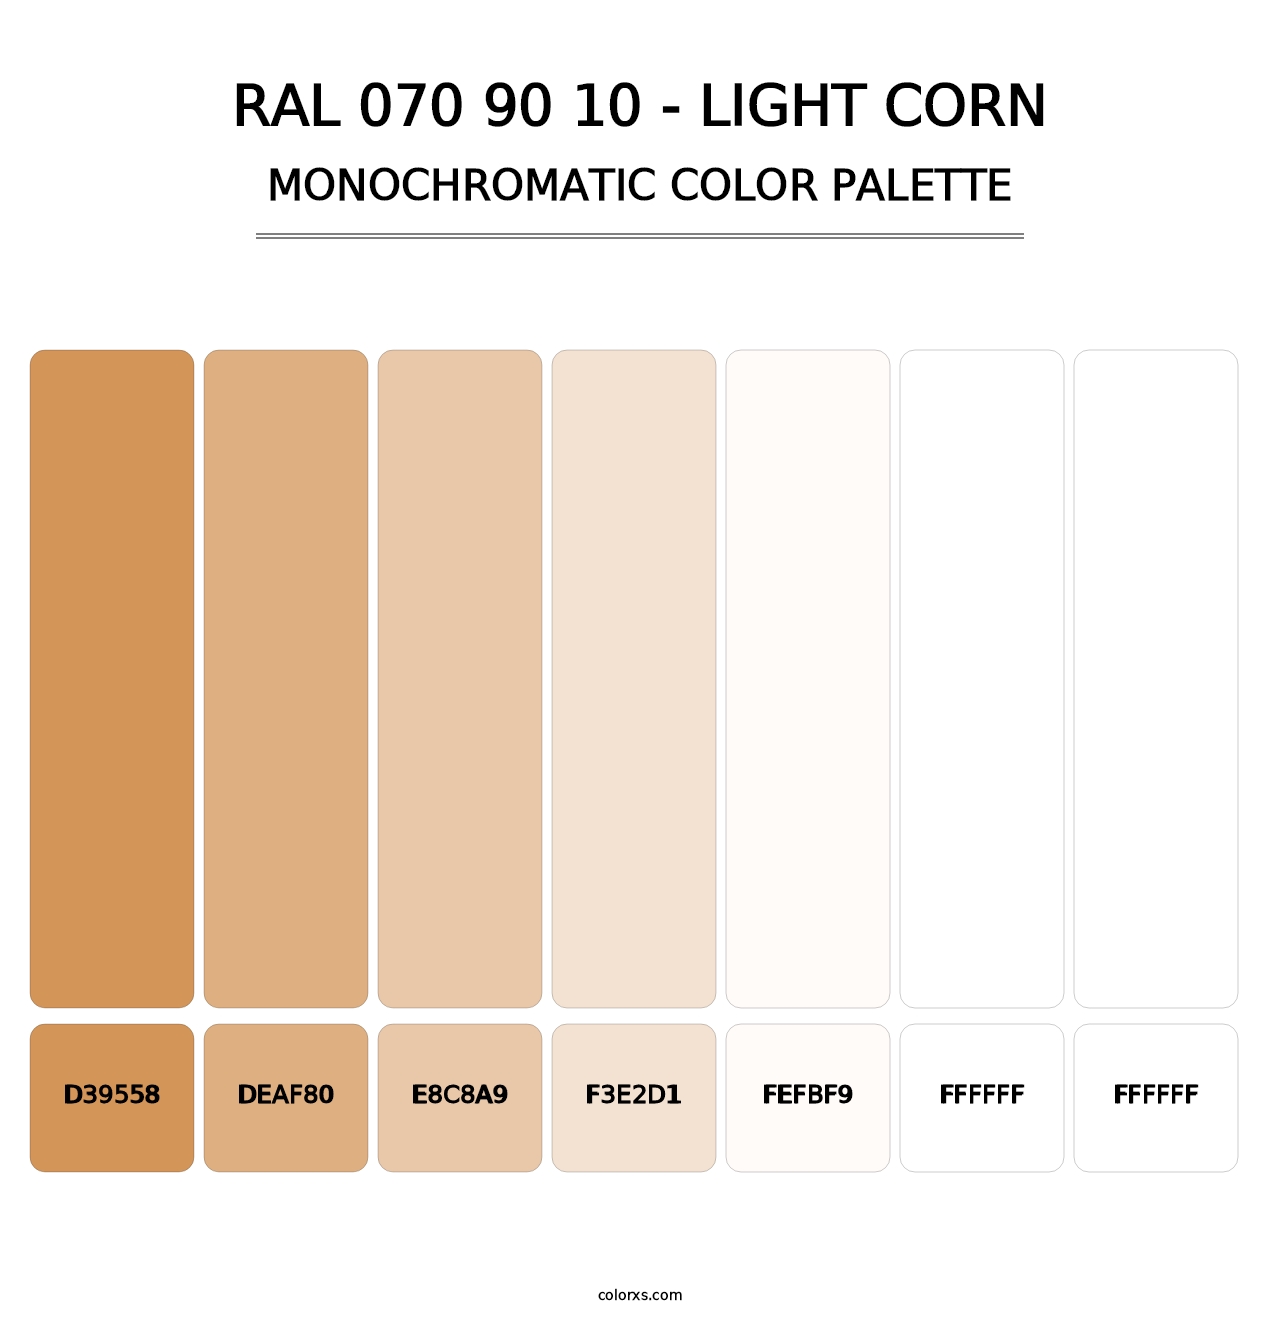 RAL 070 90 10 - Light Corn - Monochromatic Color Palette